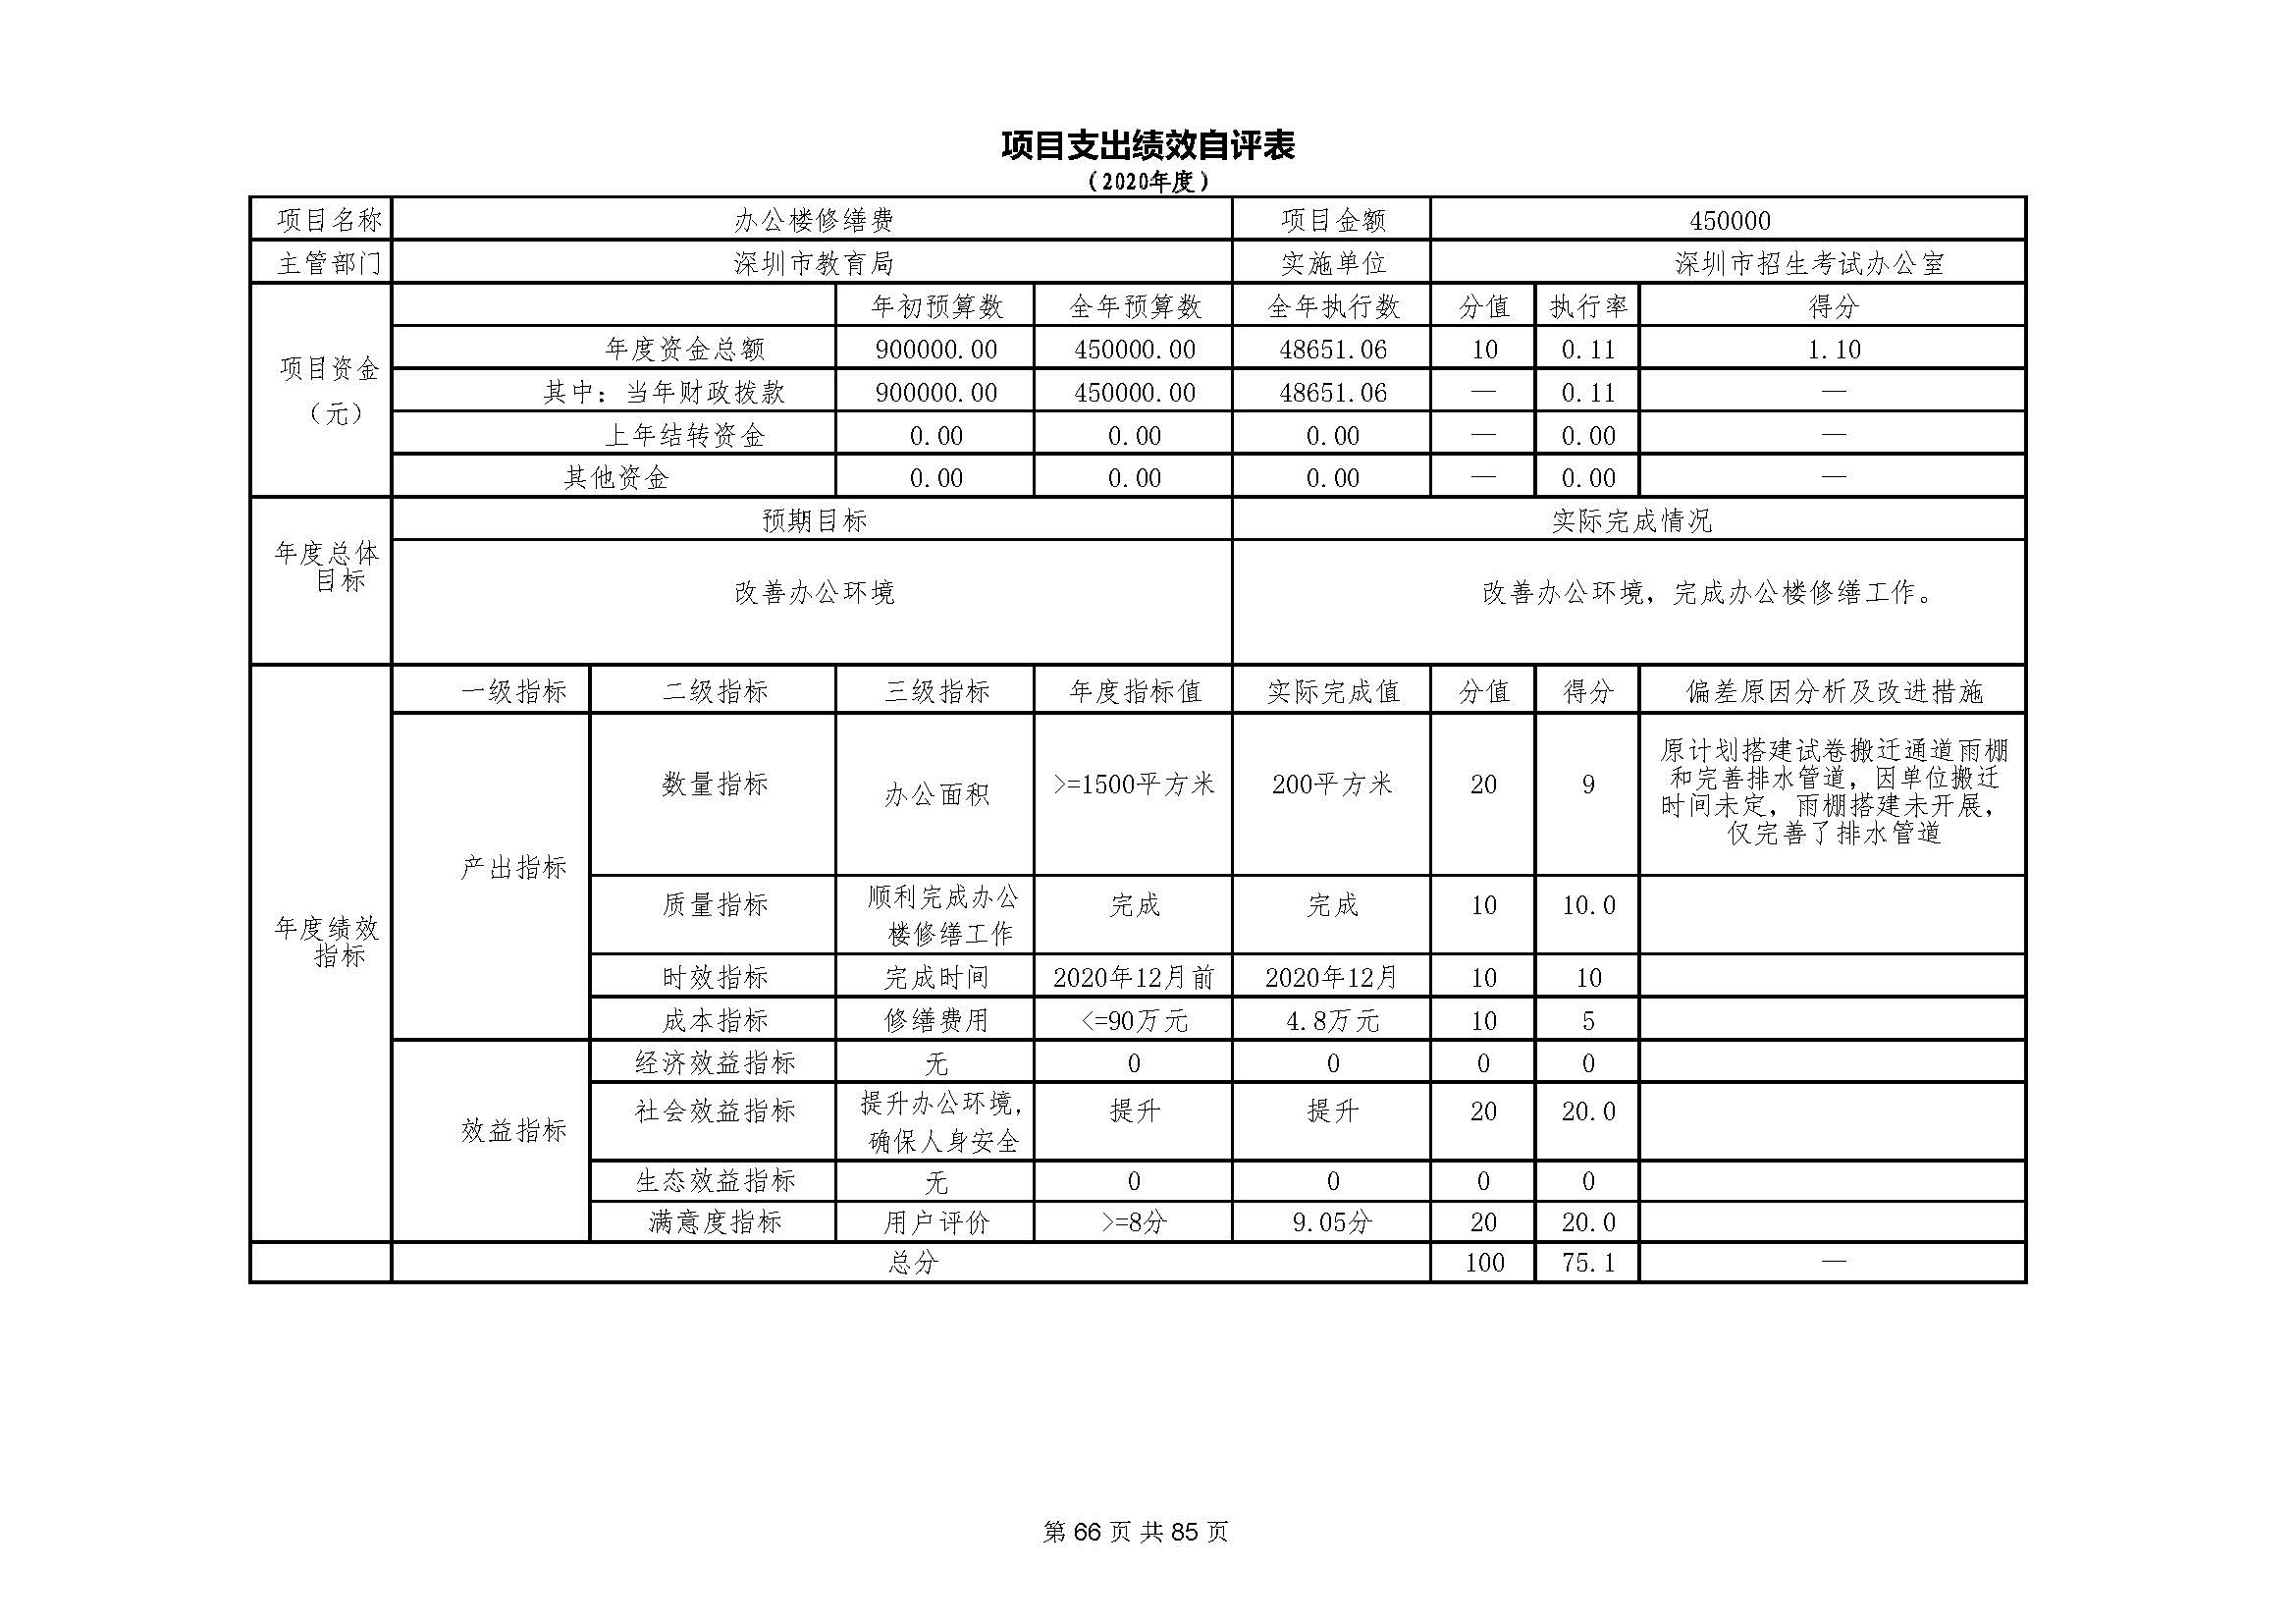 深圳市招生考试办公室2020年度部门决算_页面_67.jpg